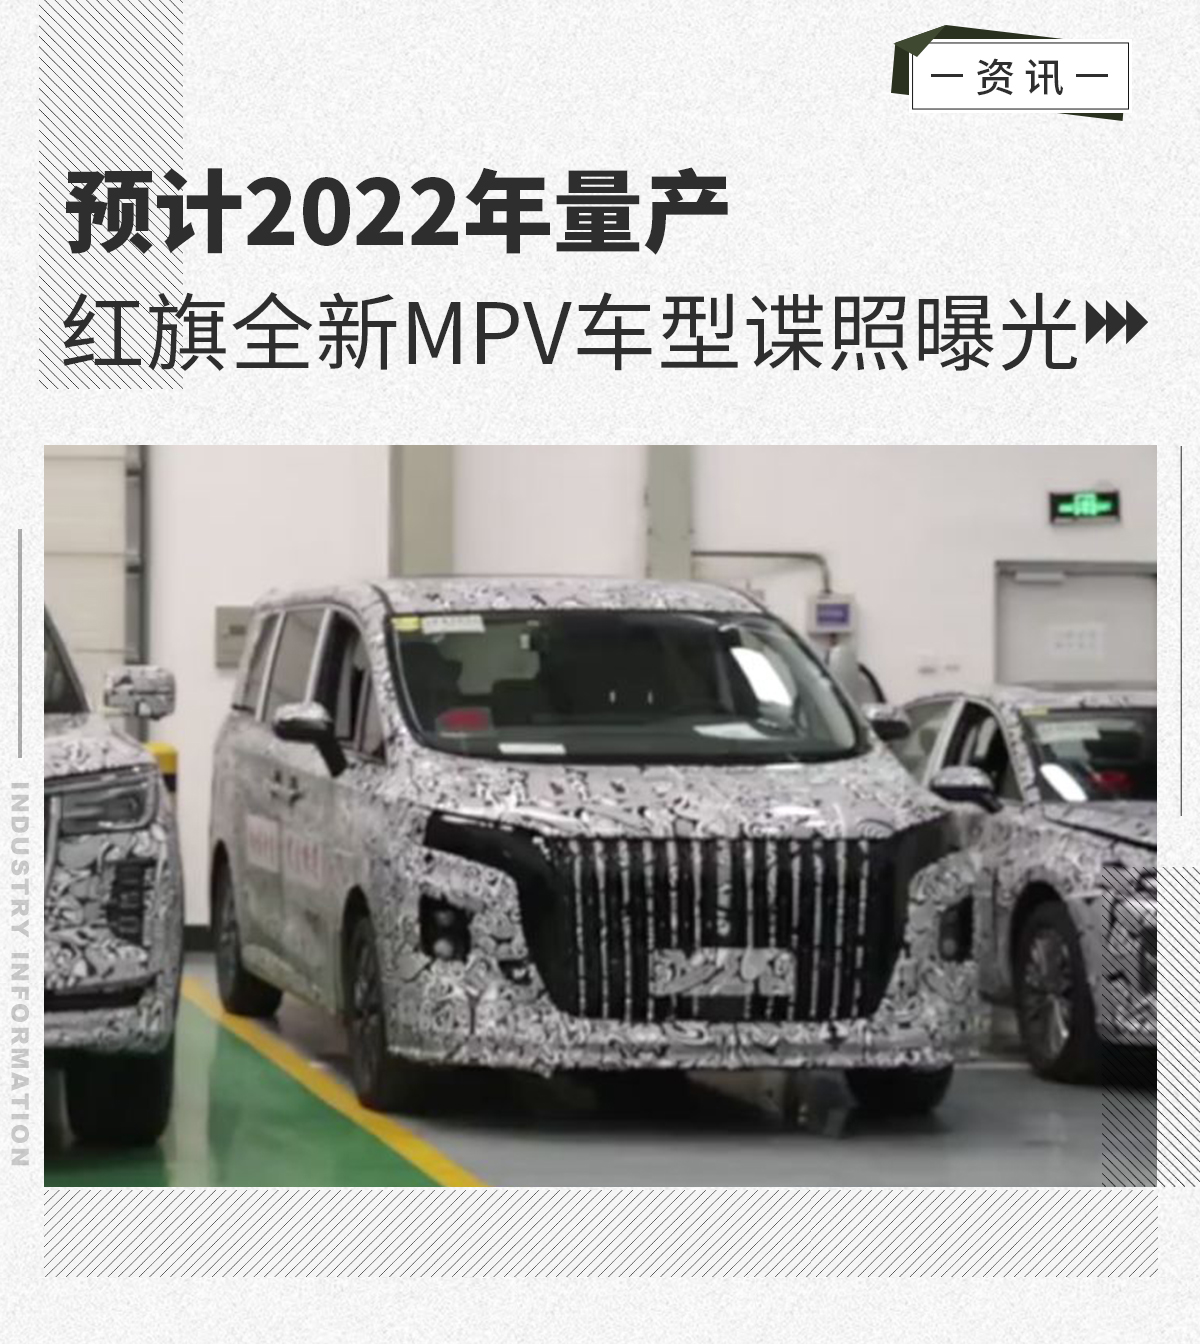 曝红旗首款MPV车型谍照 预计2022年量产